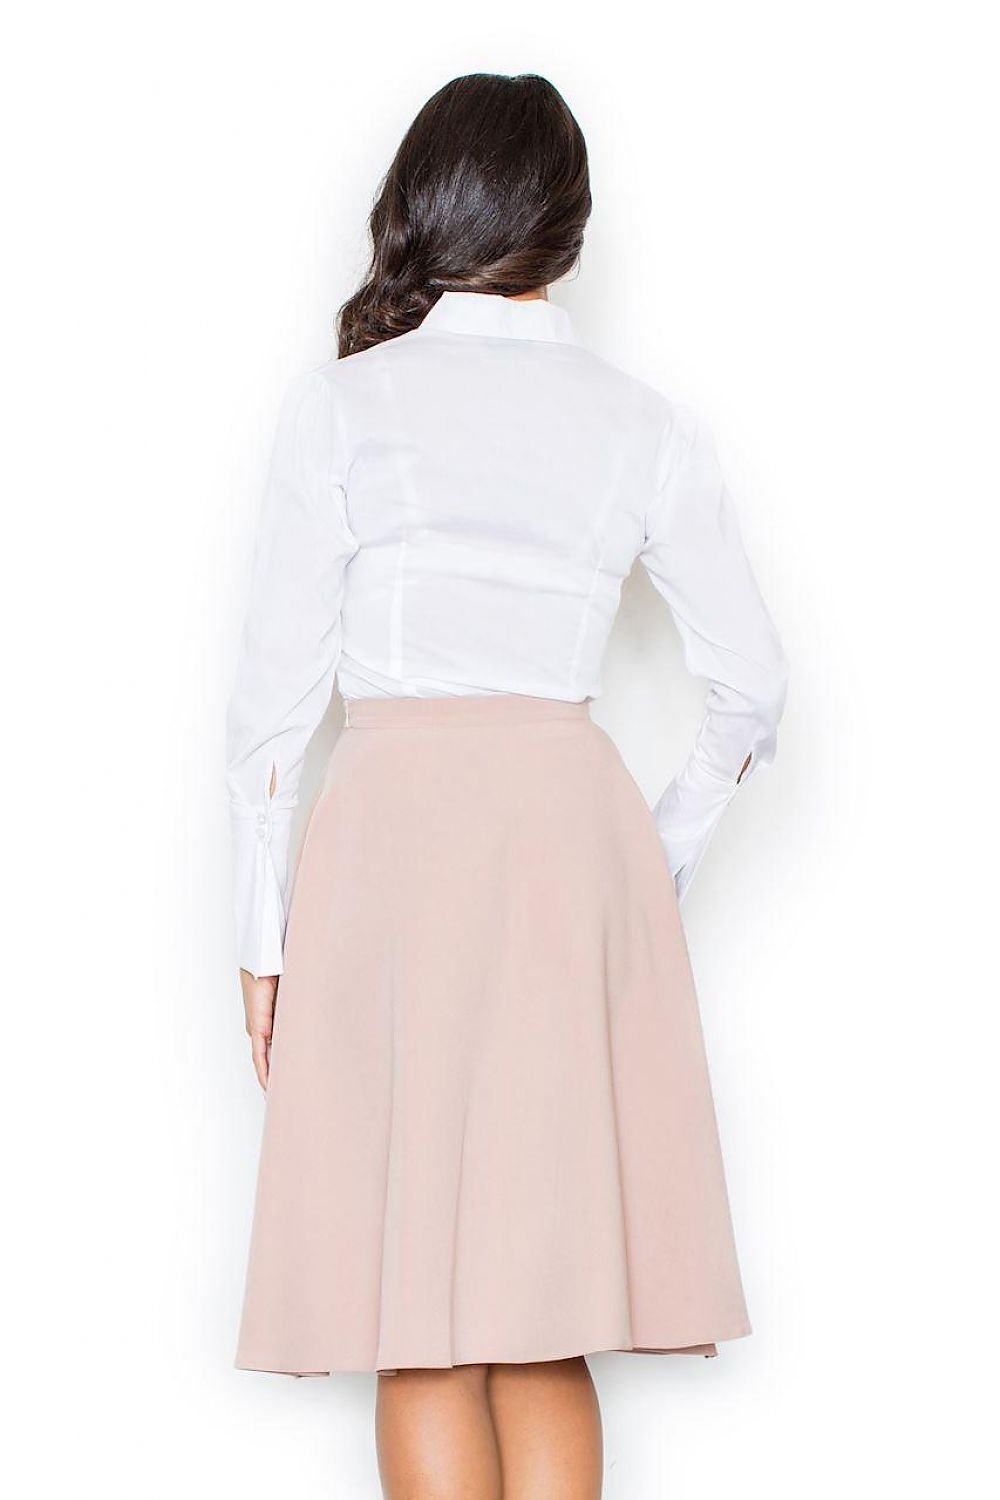 Jupe plissée mi-longue rose élégante, parfaite pour un style chic et féminin, disponible sur jupe-plissee-mi-longue-rose.